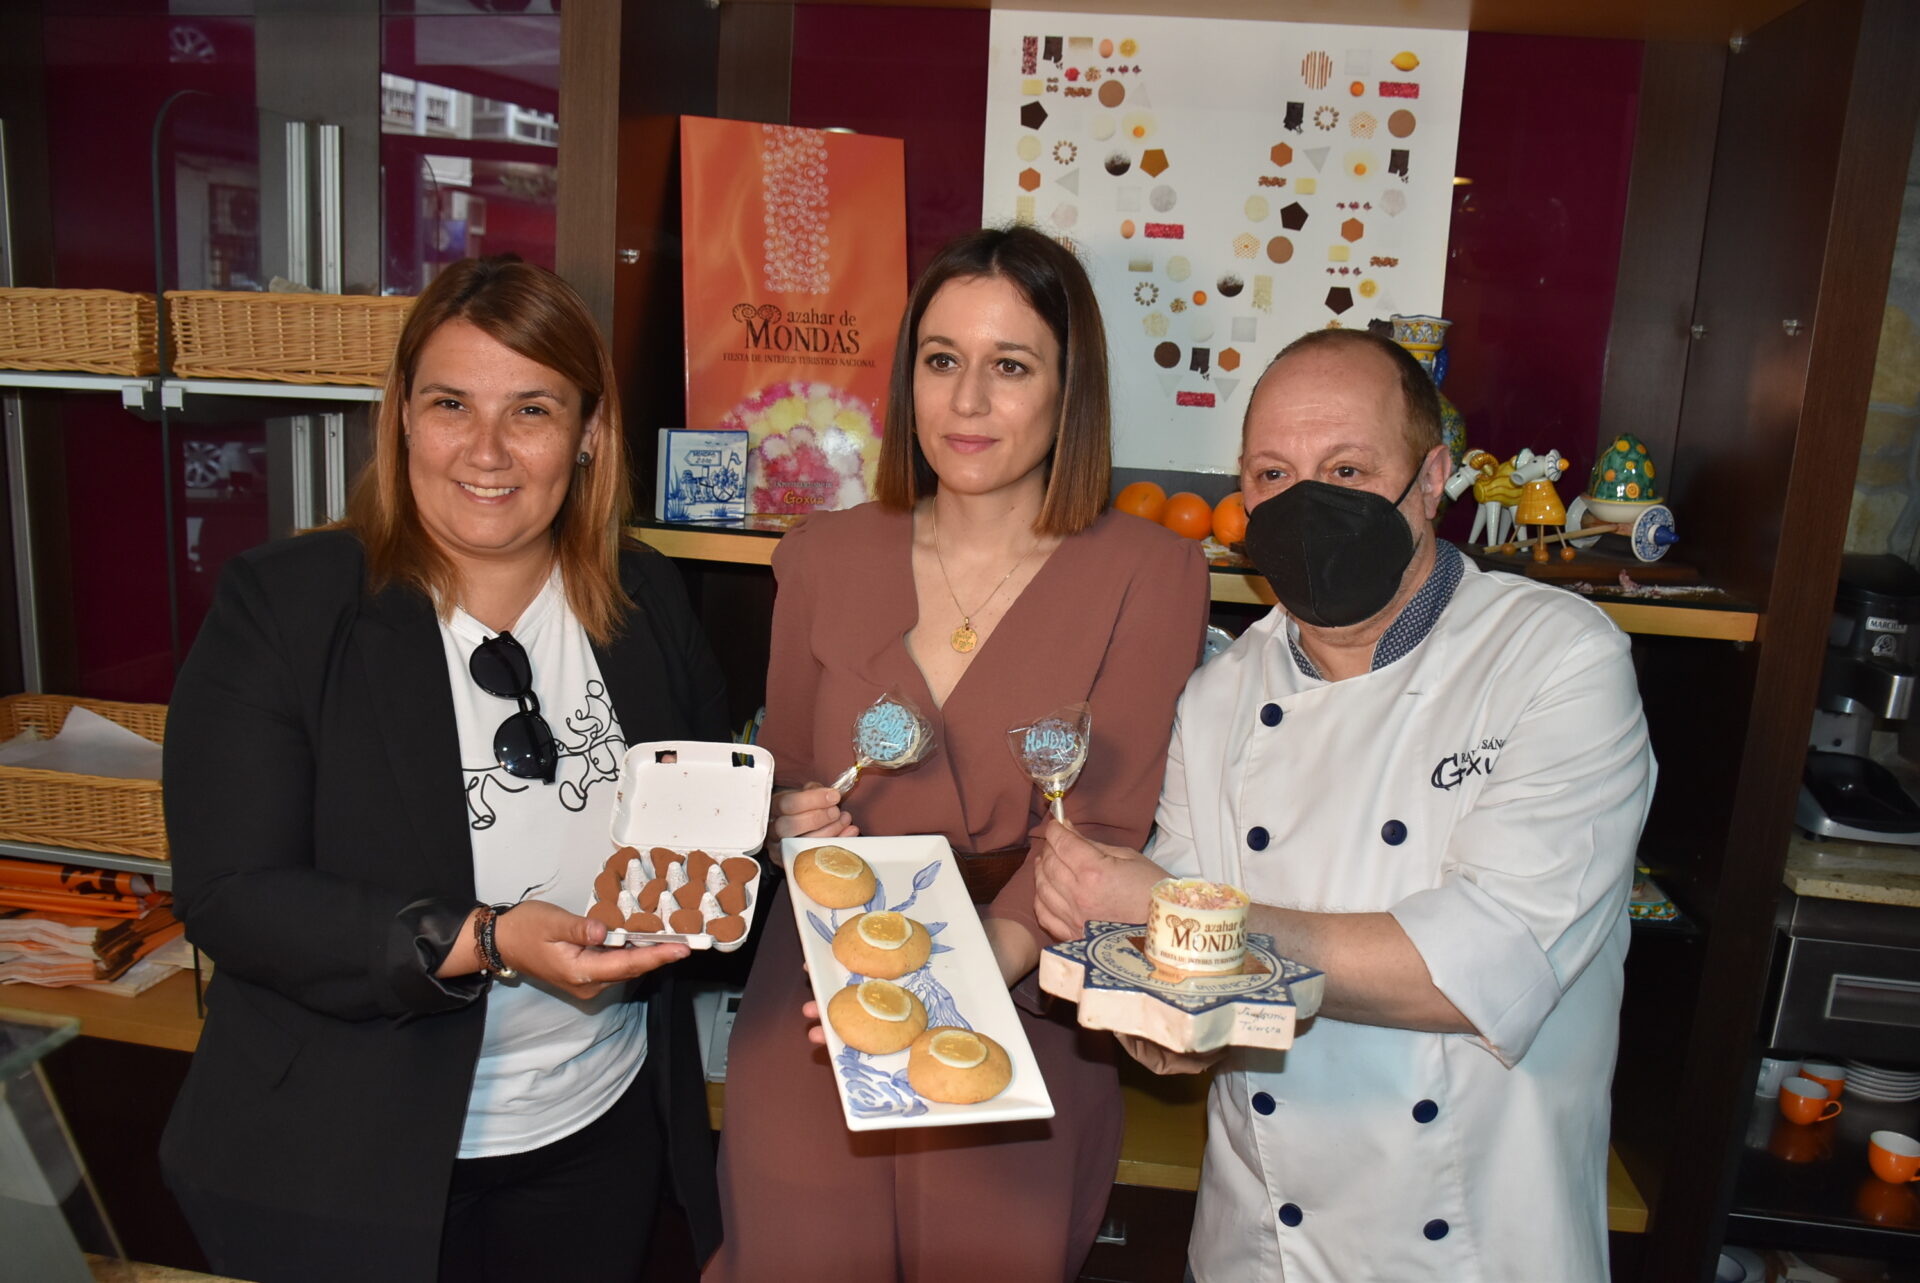 El Gobierno de Talavera apuesta por la promoción de las Mondas a través del turismo y la cultura gastronómica